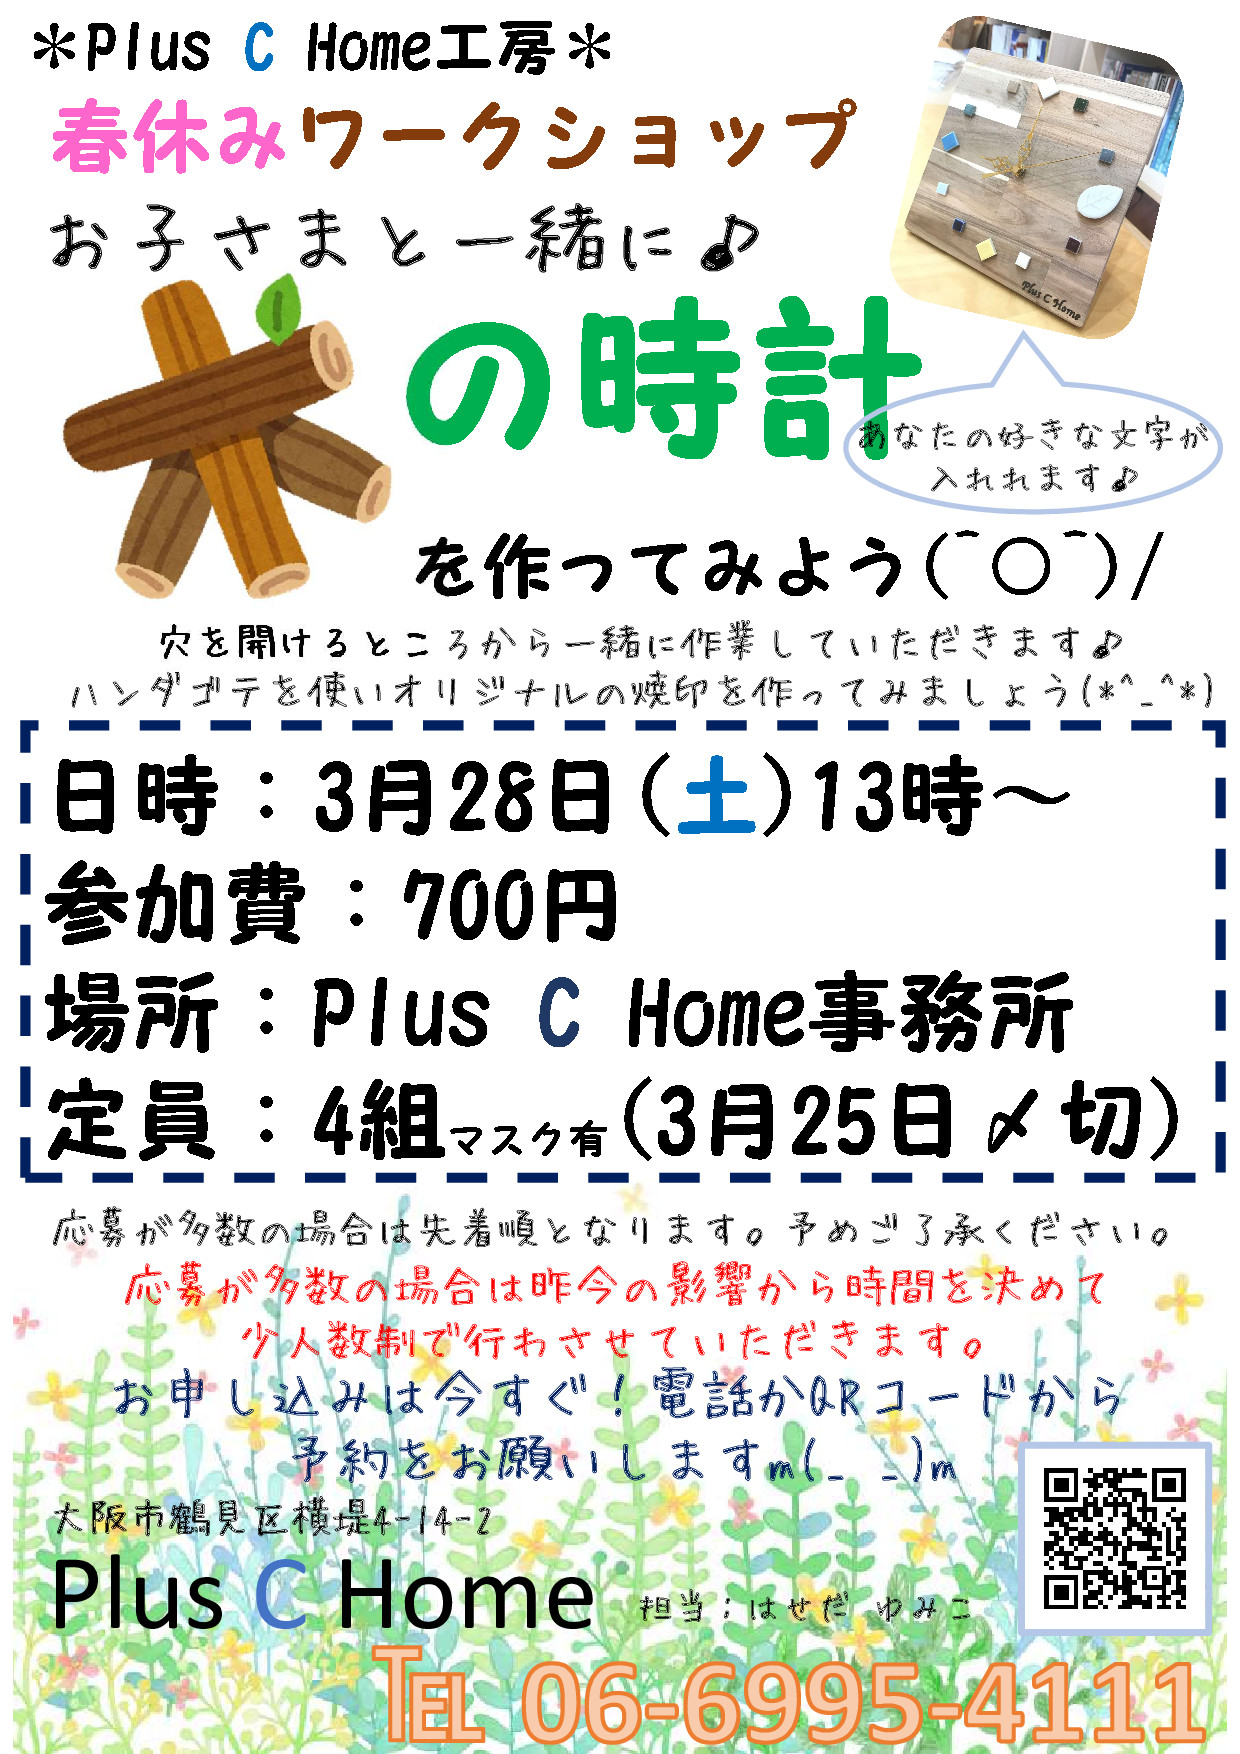 大阪注文住宅工務店Plus C Homeがワークショップを開催♪お子様と一緒に『木の時計』を作ってみよう(^○^)/